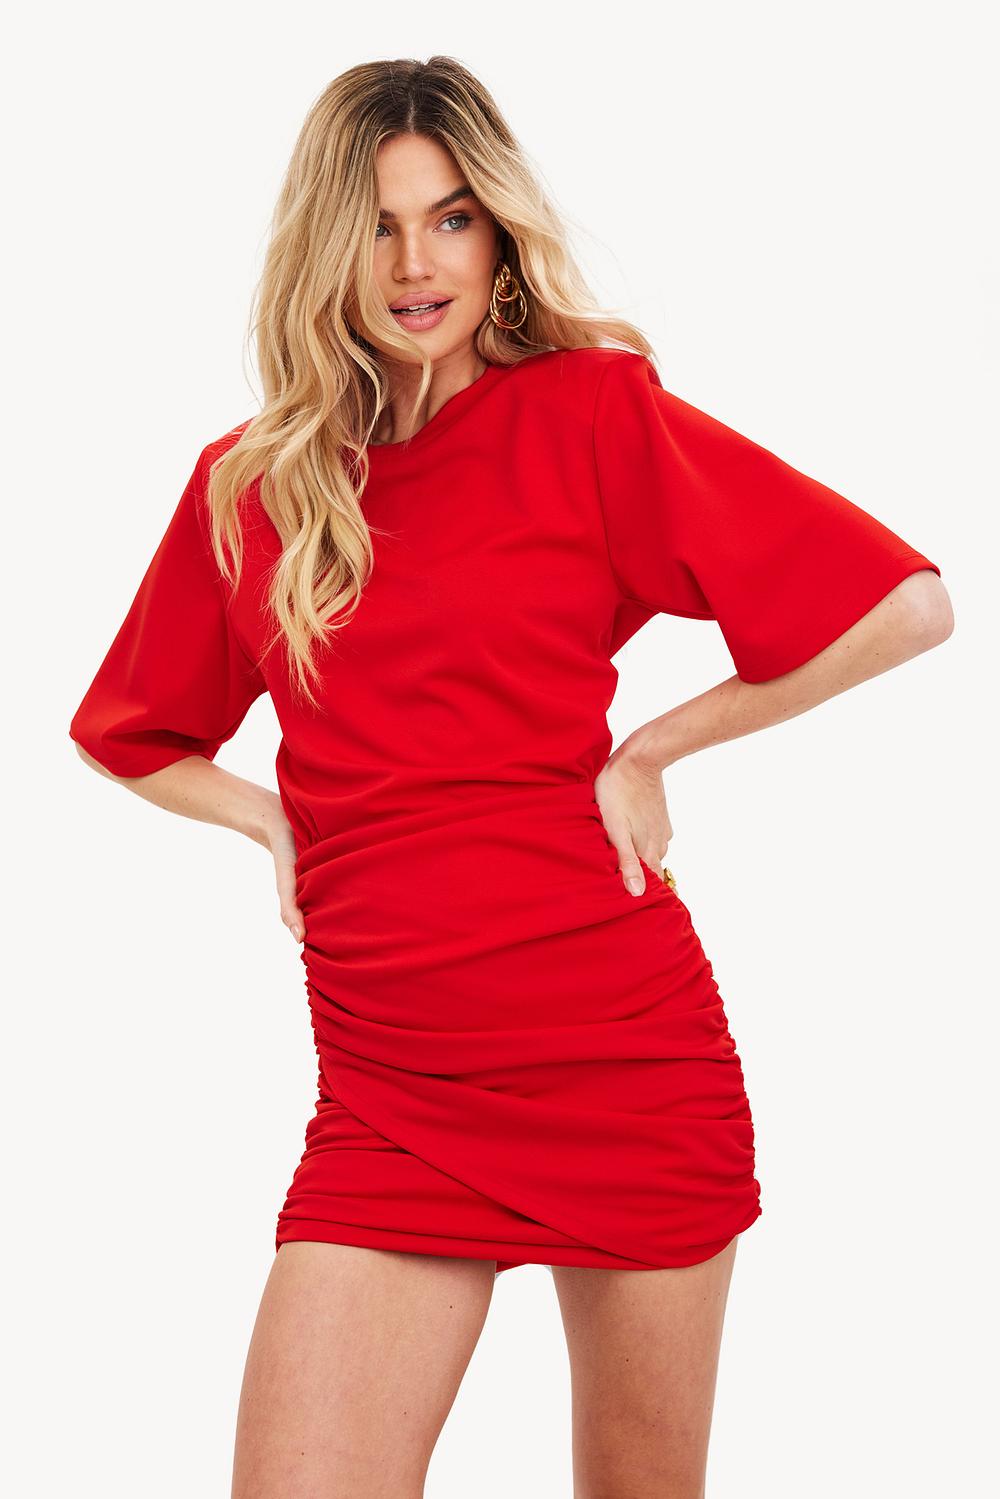 Red T-shirt dress